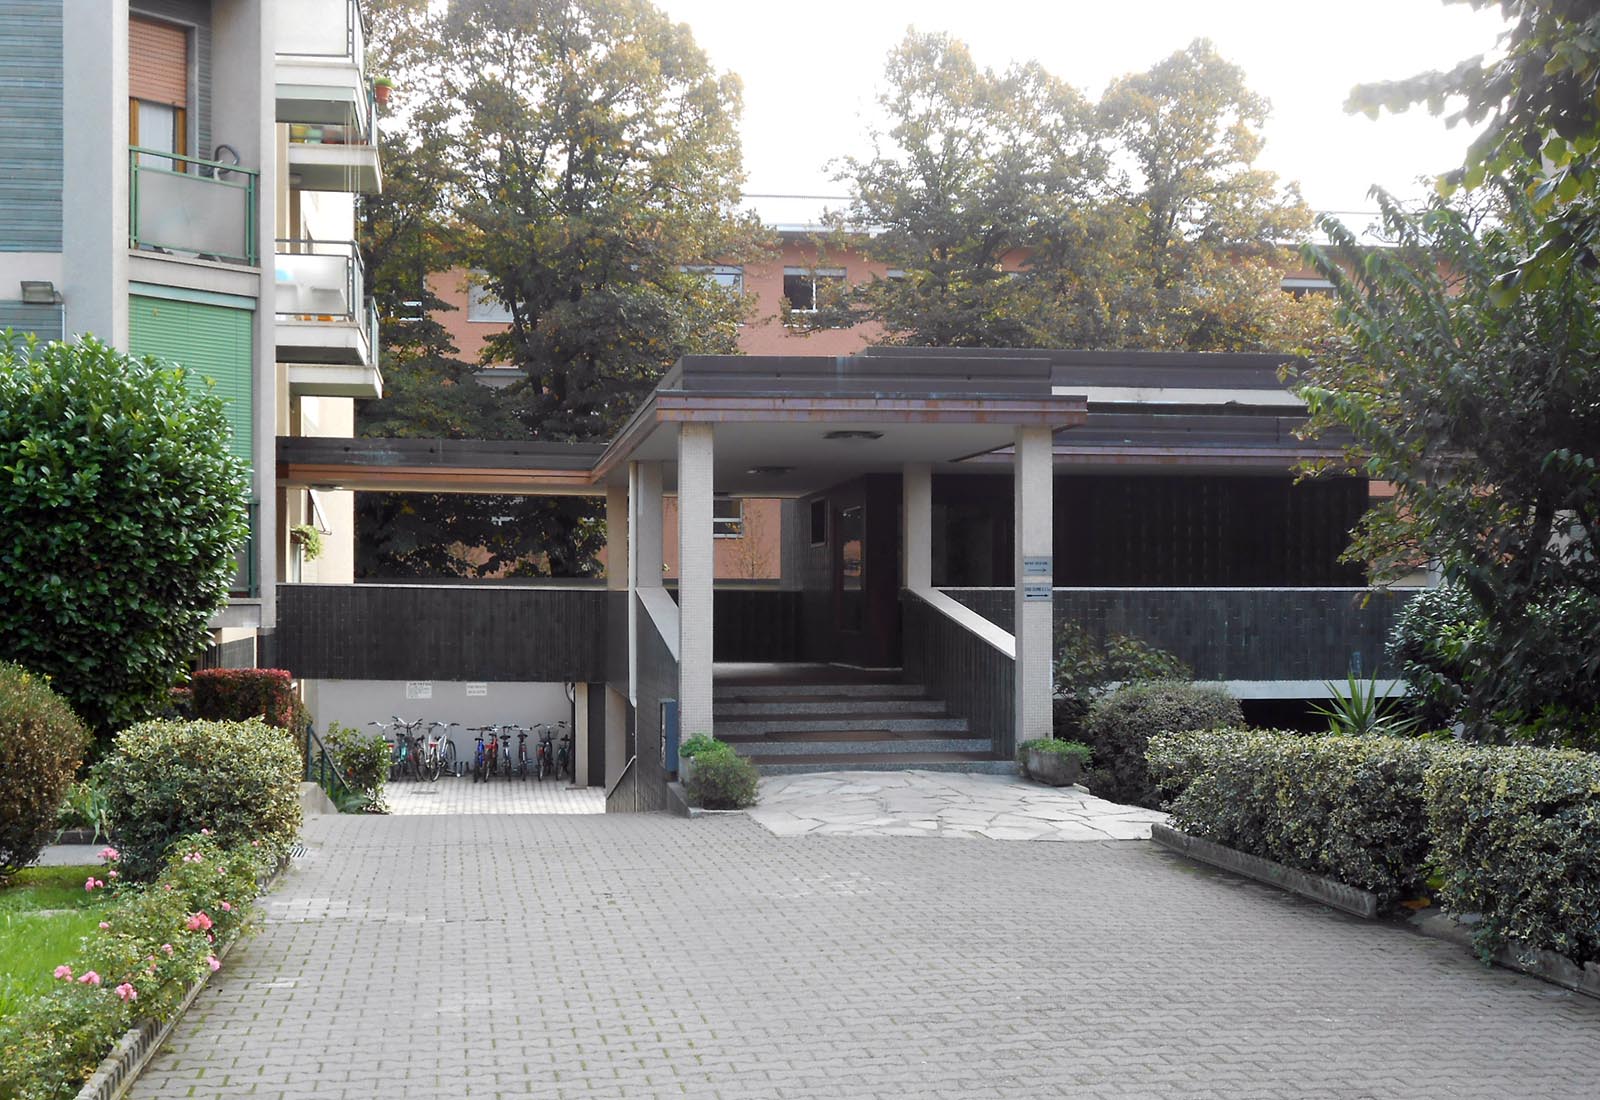 Edifici residenziali a Milano in via Romolo - La portineria